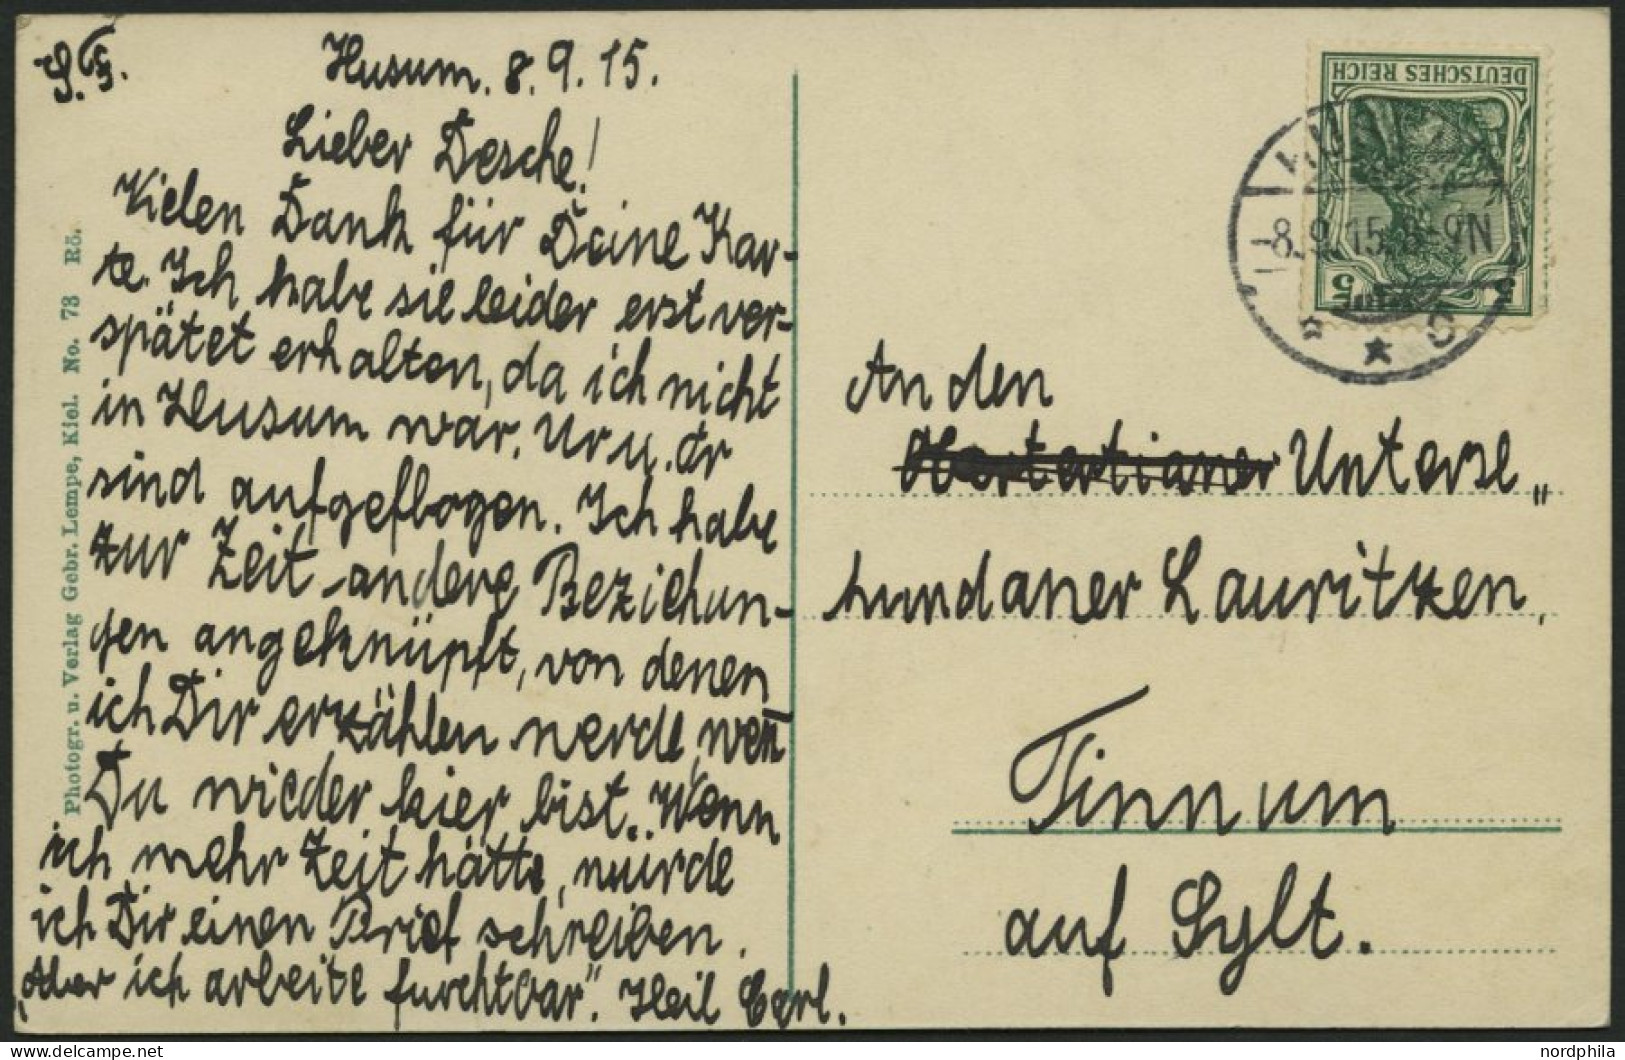 ALTE POSTKARTEN - SCHIFFE KAISERL. MARINE BIS 1918 S.M.S. GRILLE ,4 Karten, Eine Davon Gebraucht - Guerre